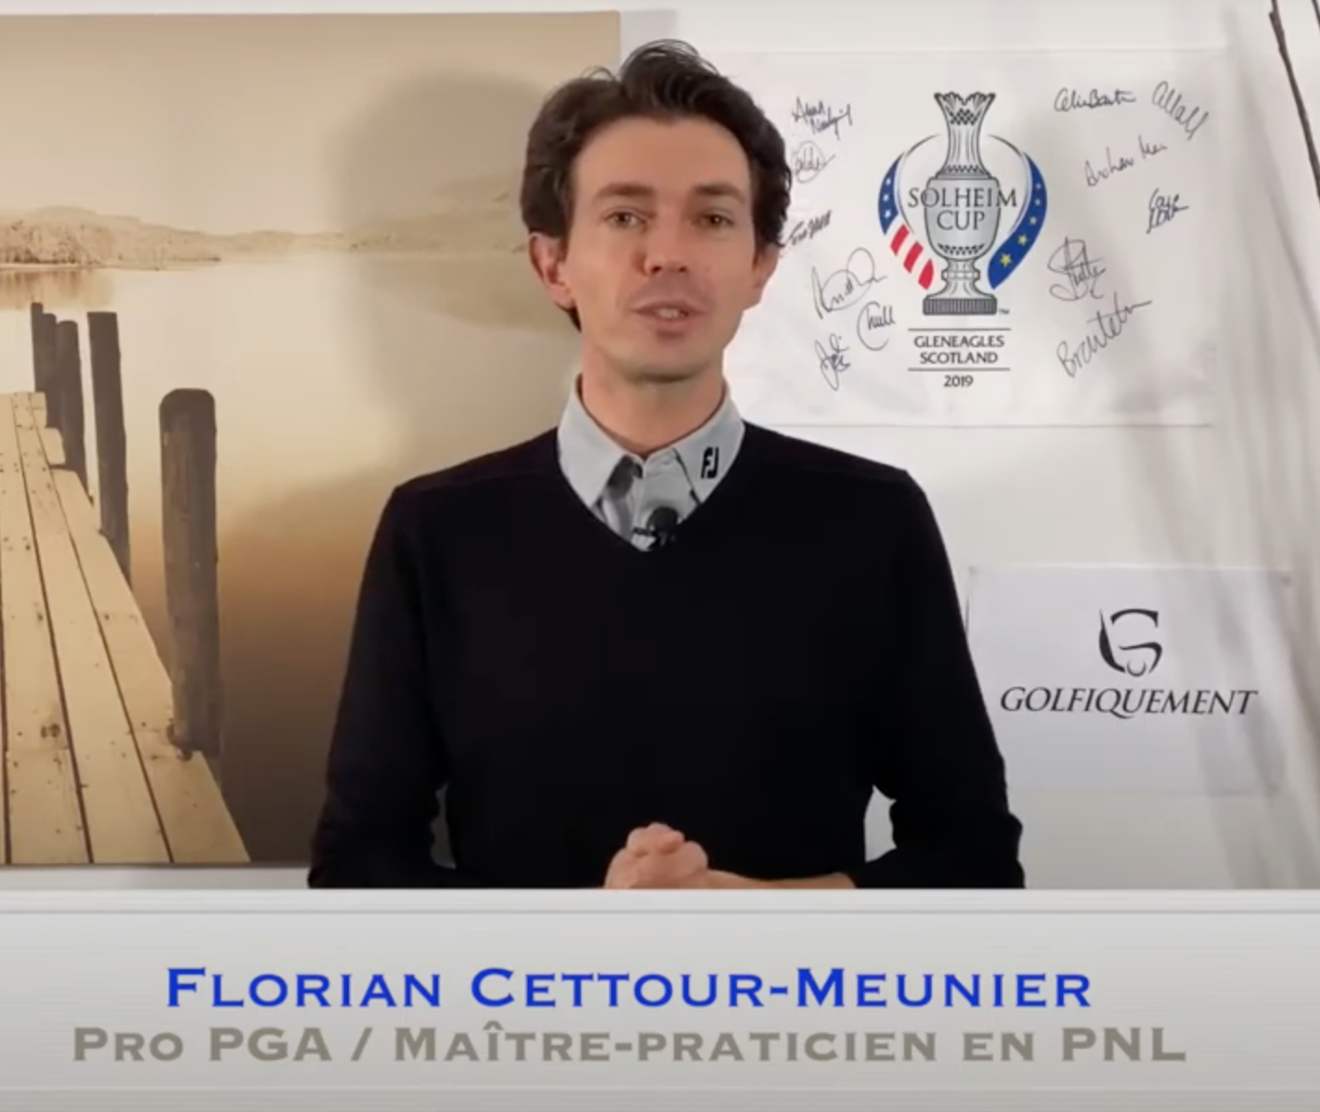 Coaching mental : vaincre la peur de l'échec au golf, avec Florian Cettour-Meunier